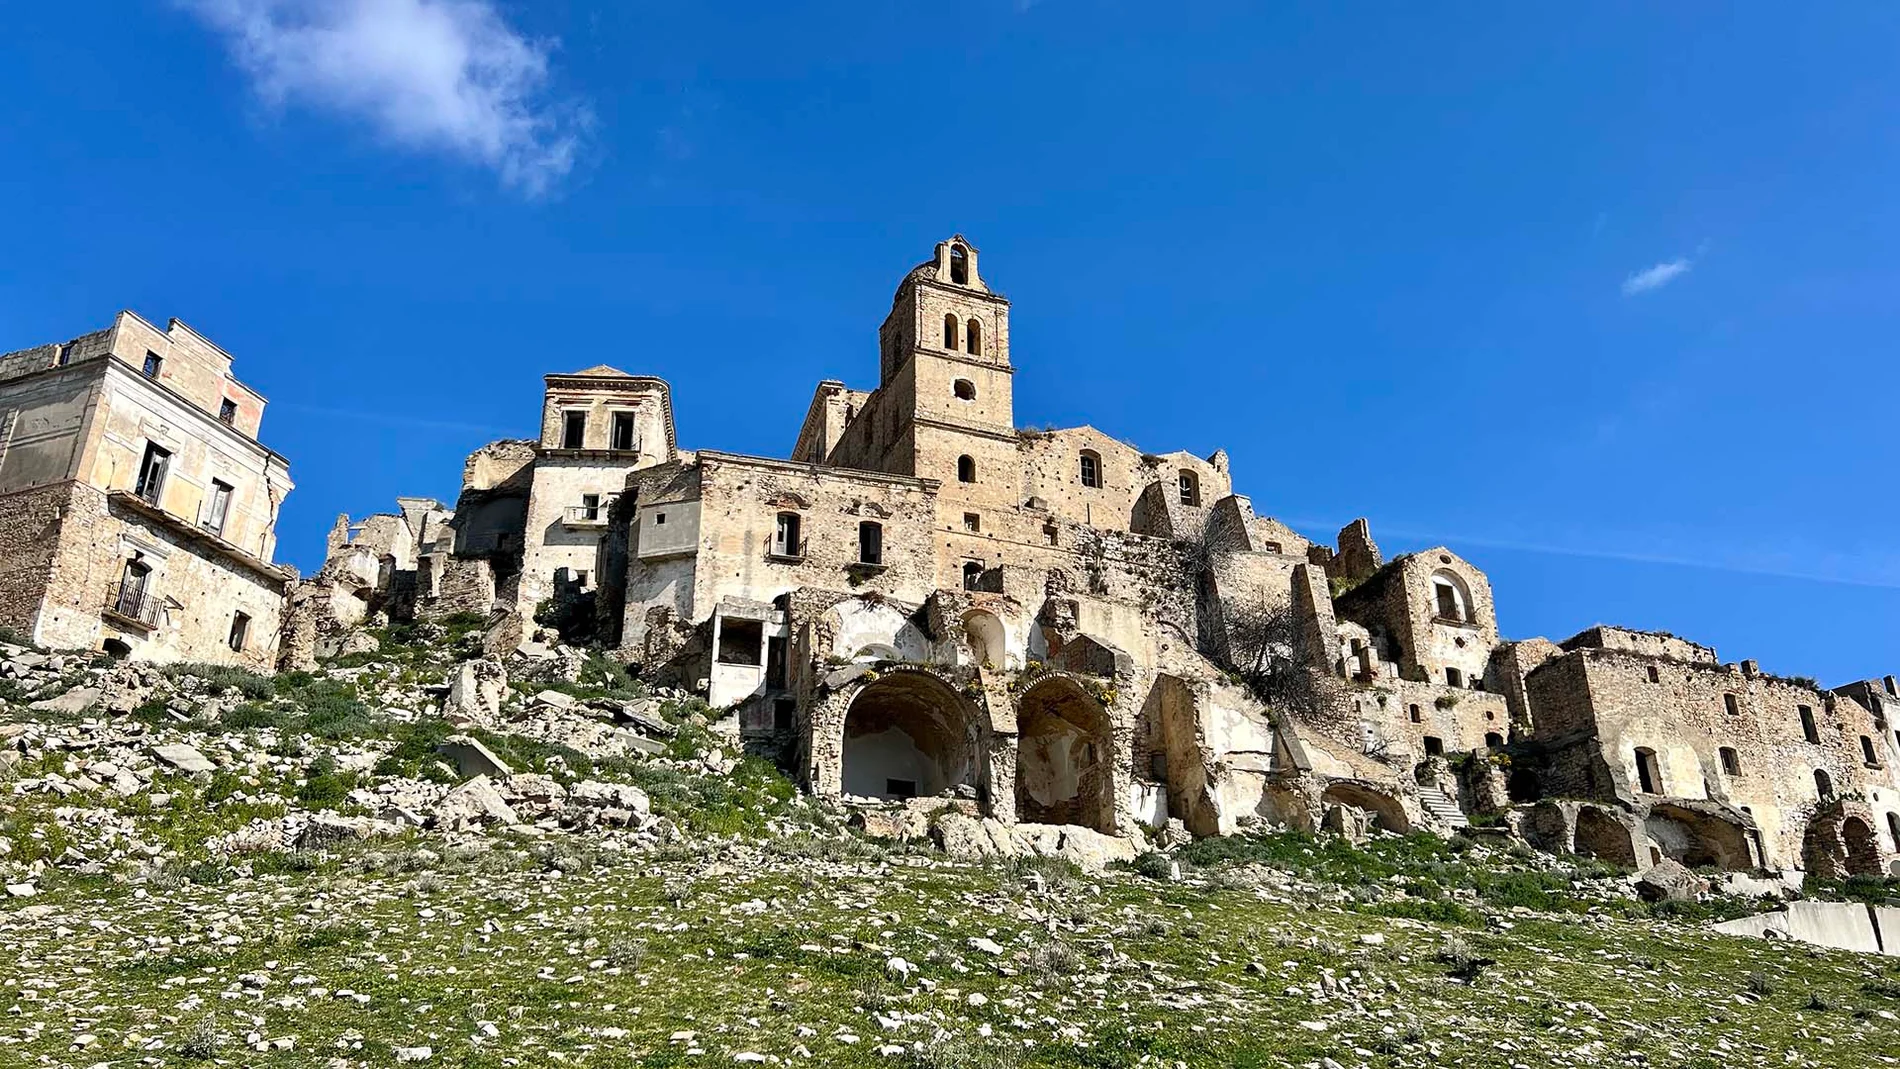 La ciudad medieval maldita y abandonada tras varios terremotos bíblicos que sólo unos pocos pueden visitar